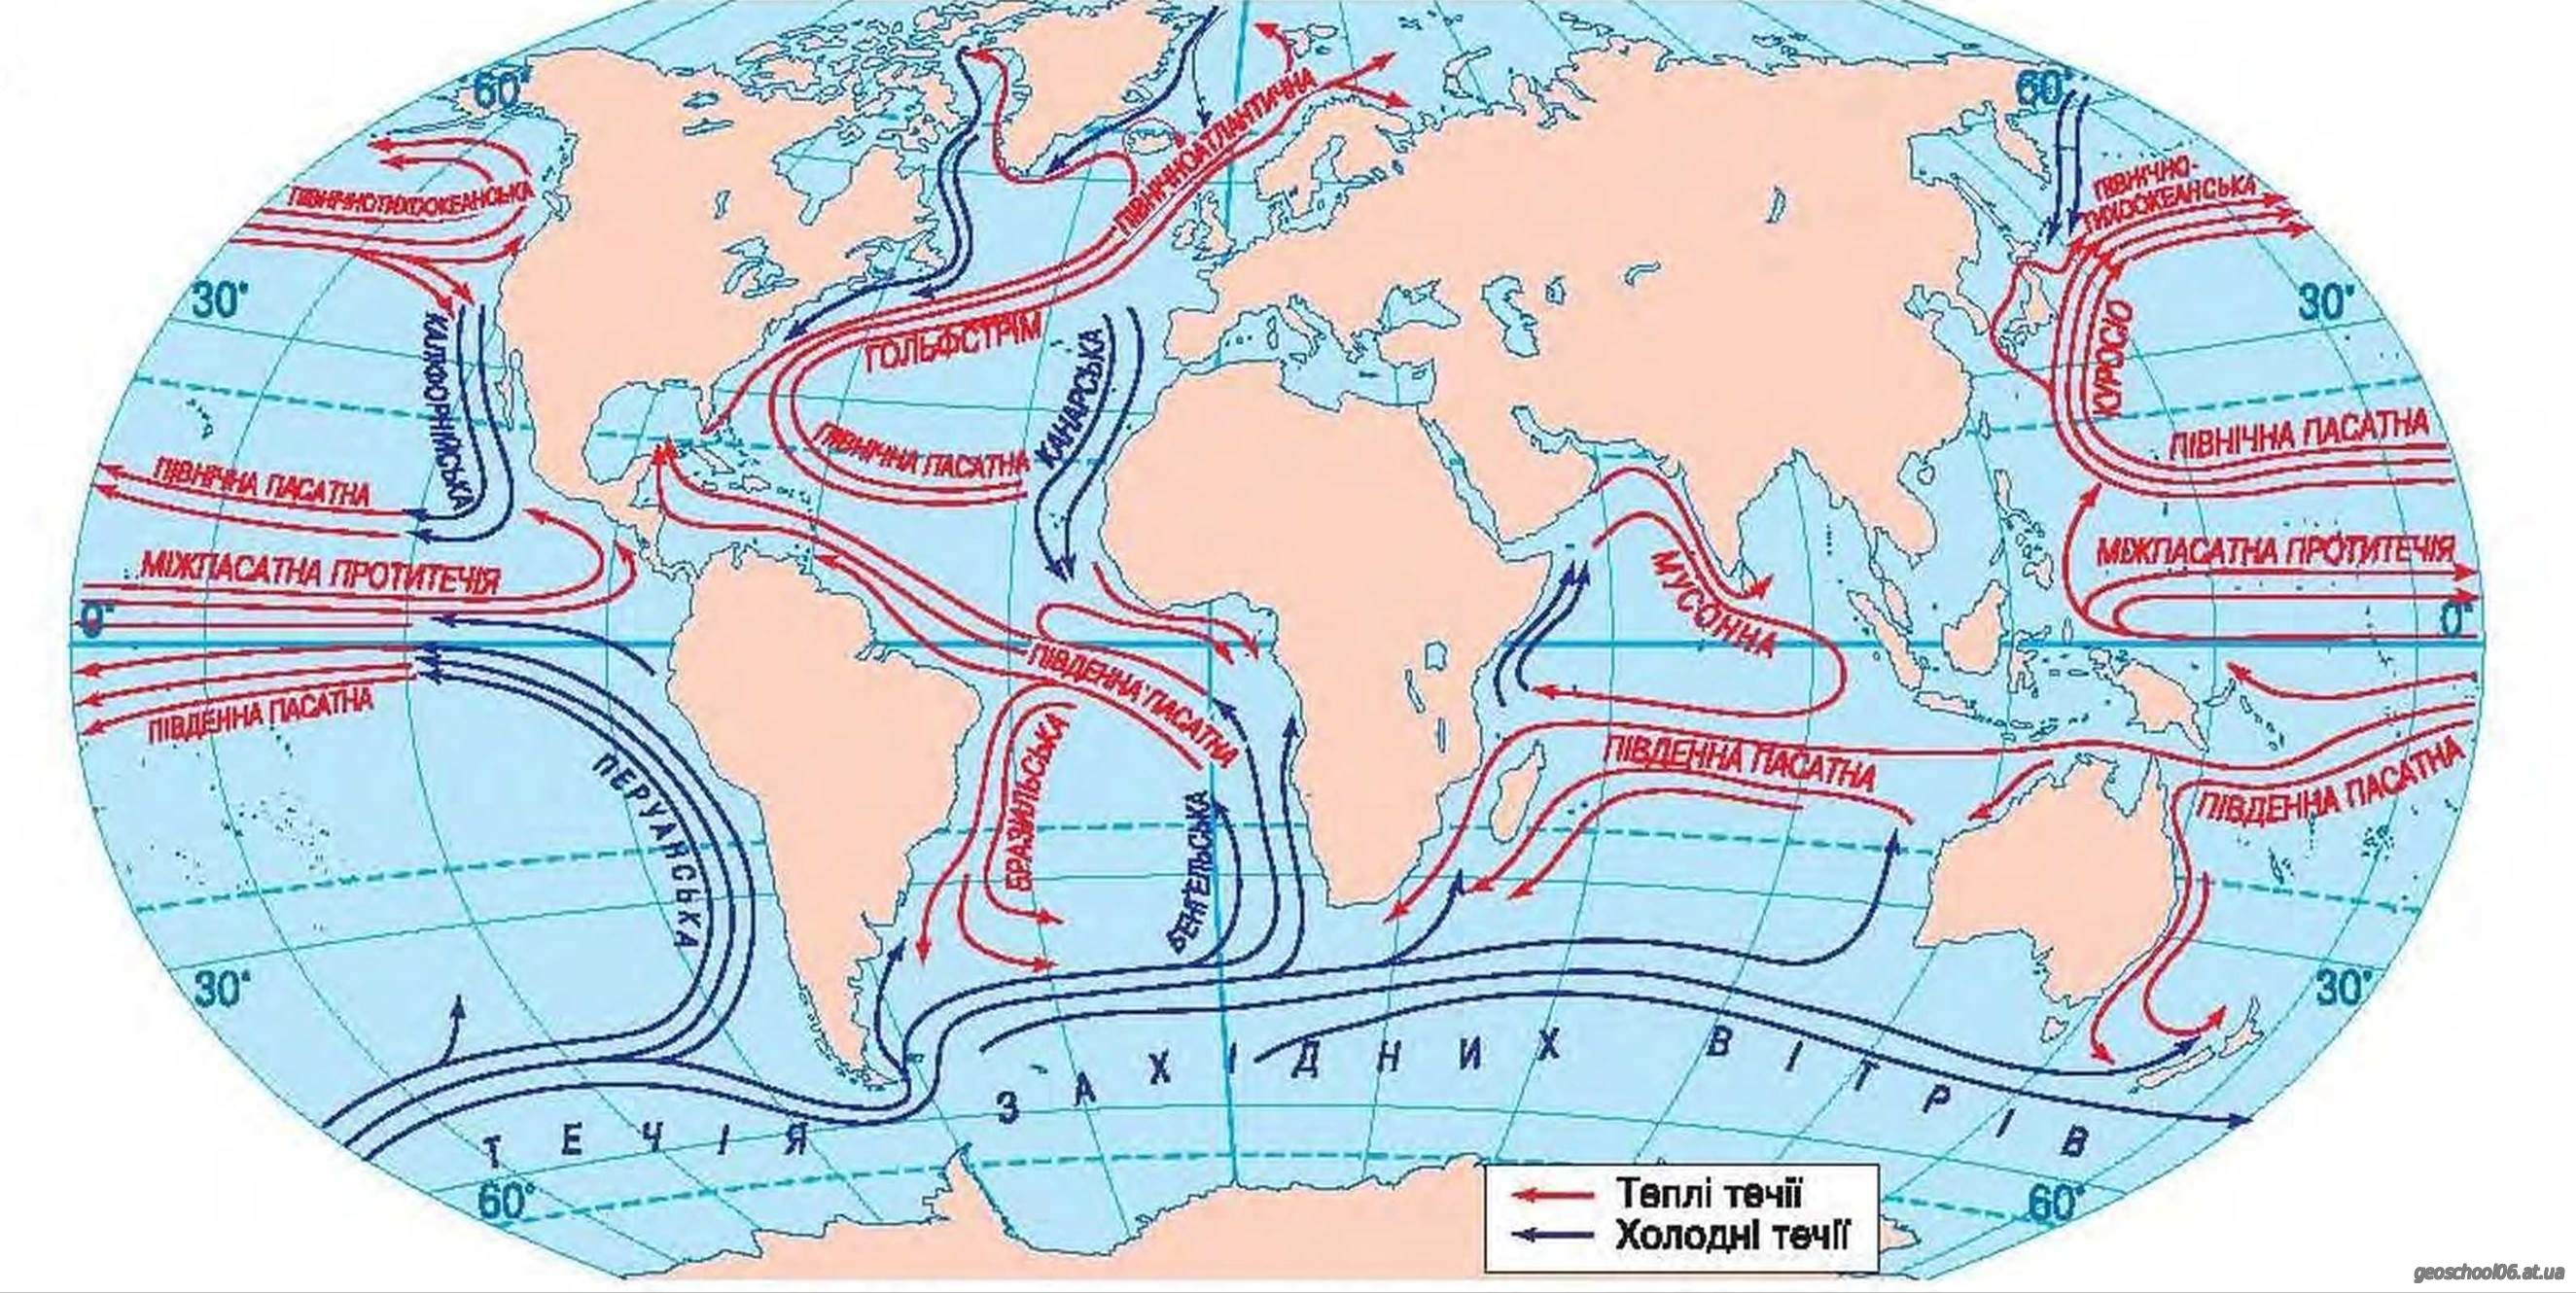 Особенности морских течений индийского океана